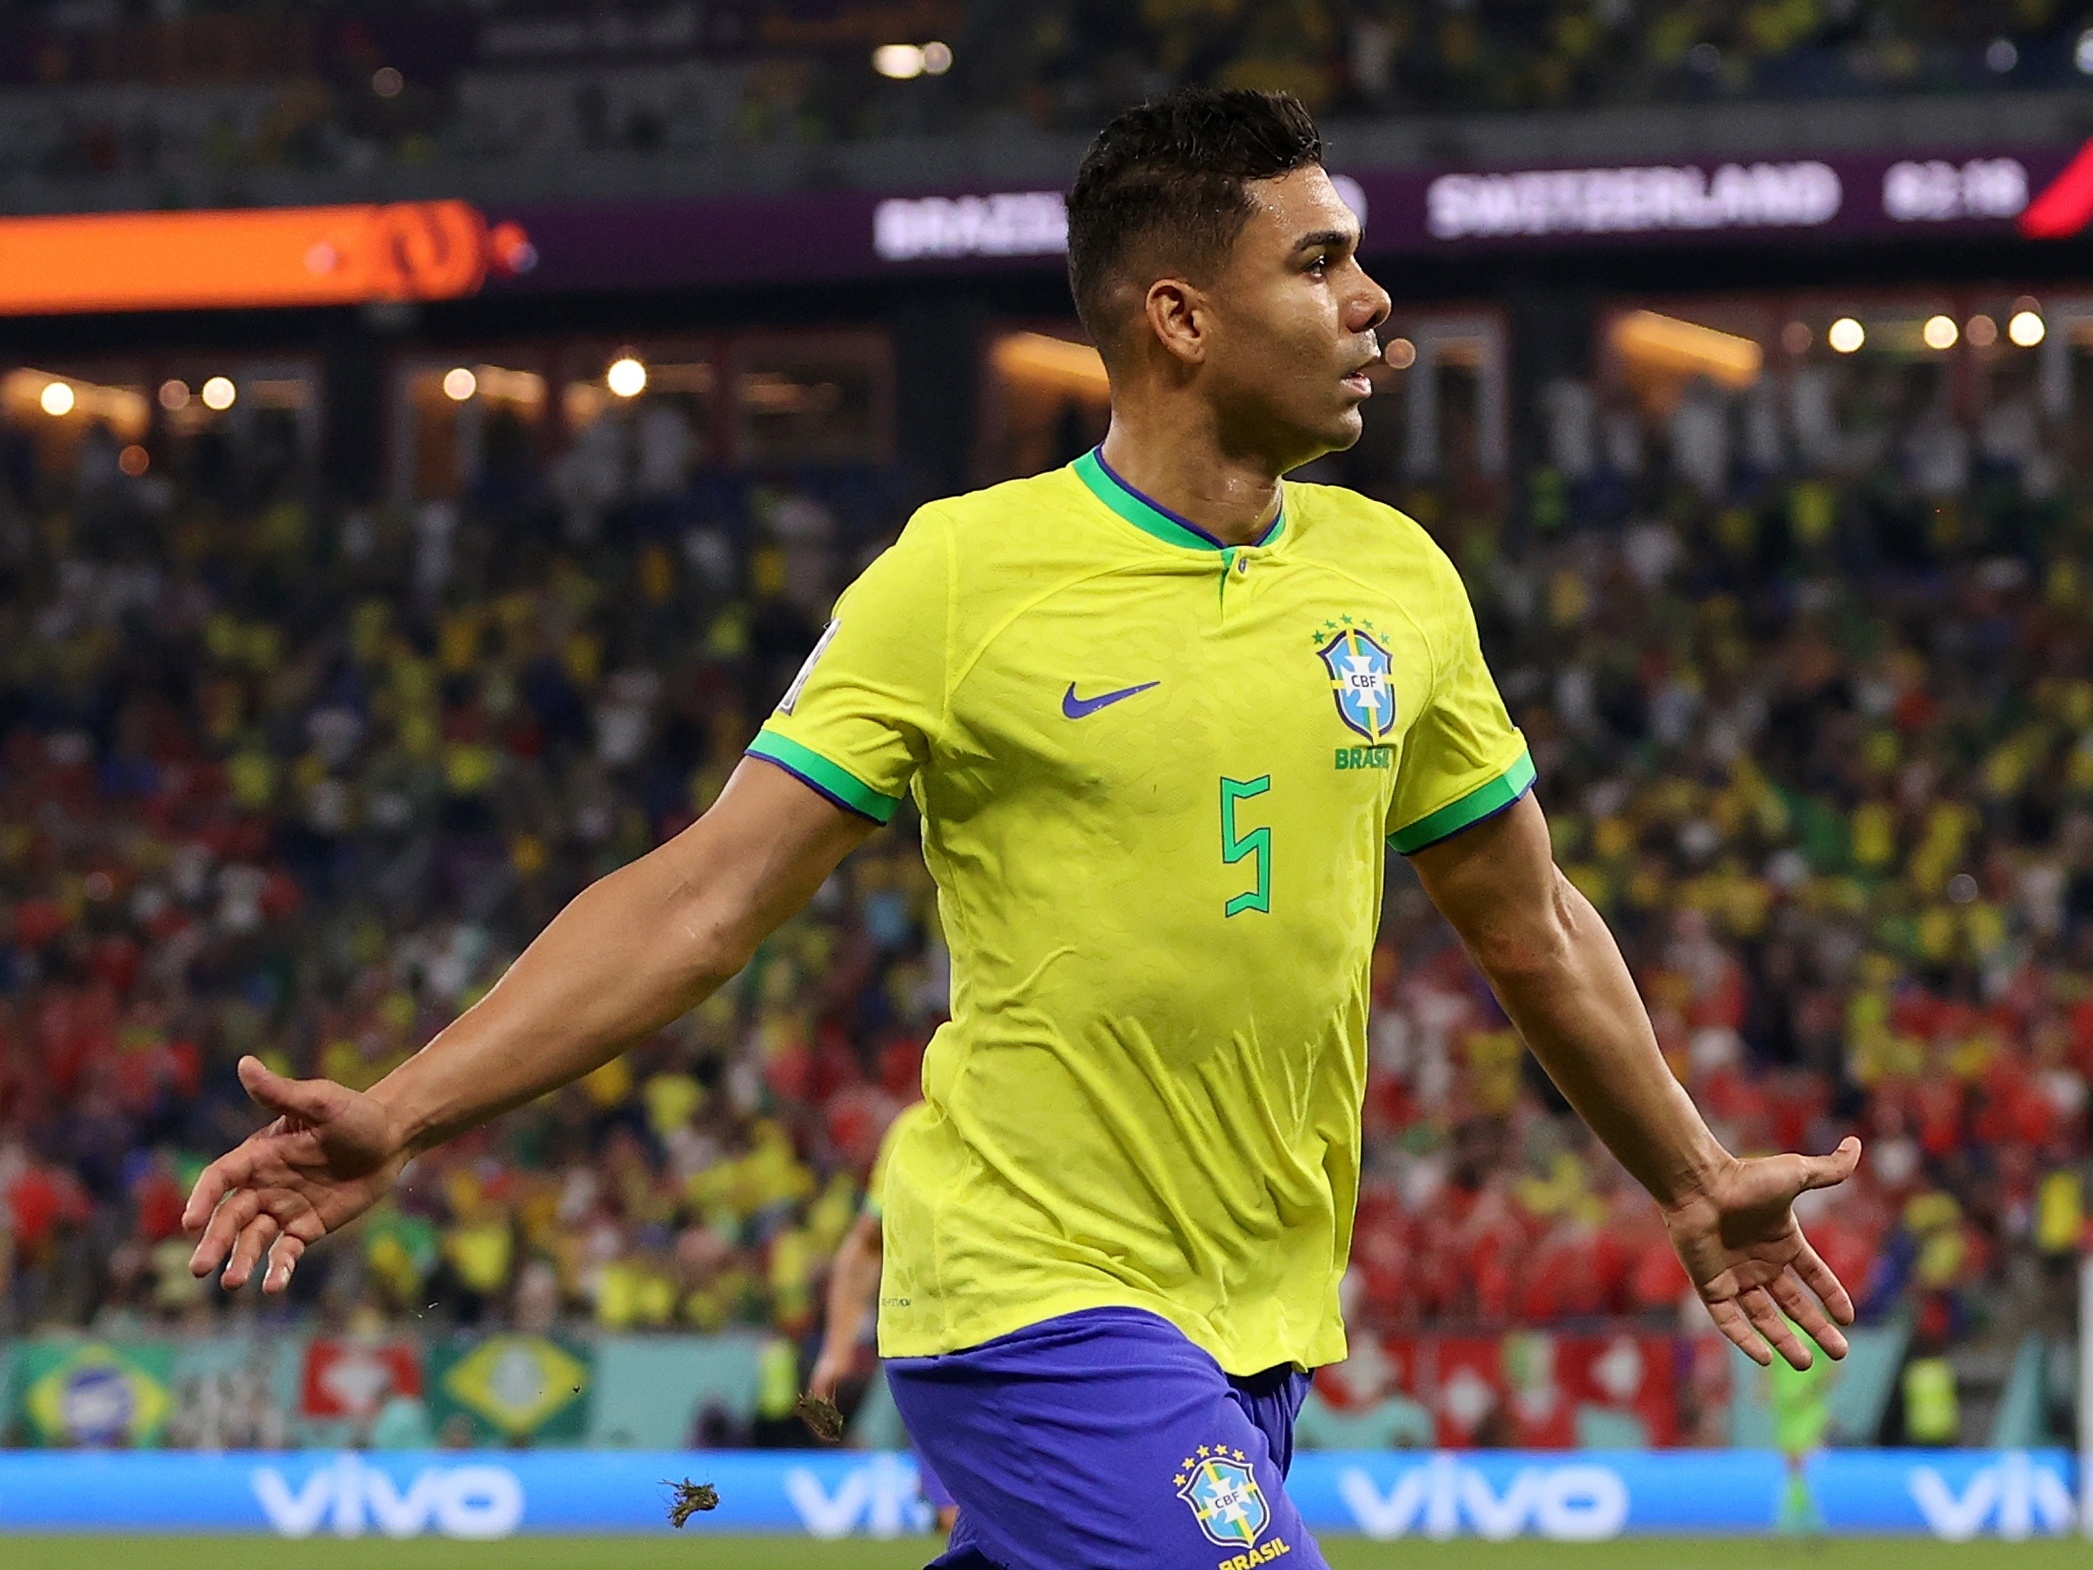 Brasil x Suíça - Melhores Momentos - Copa do mundo Qatar 2022